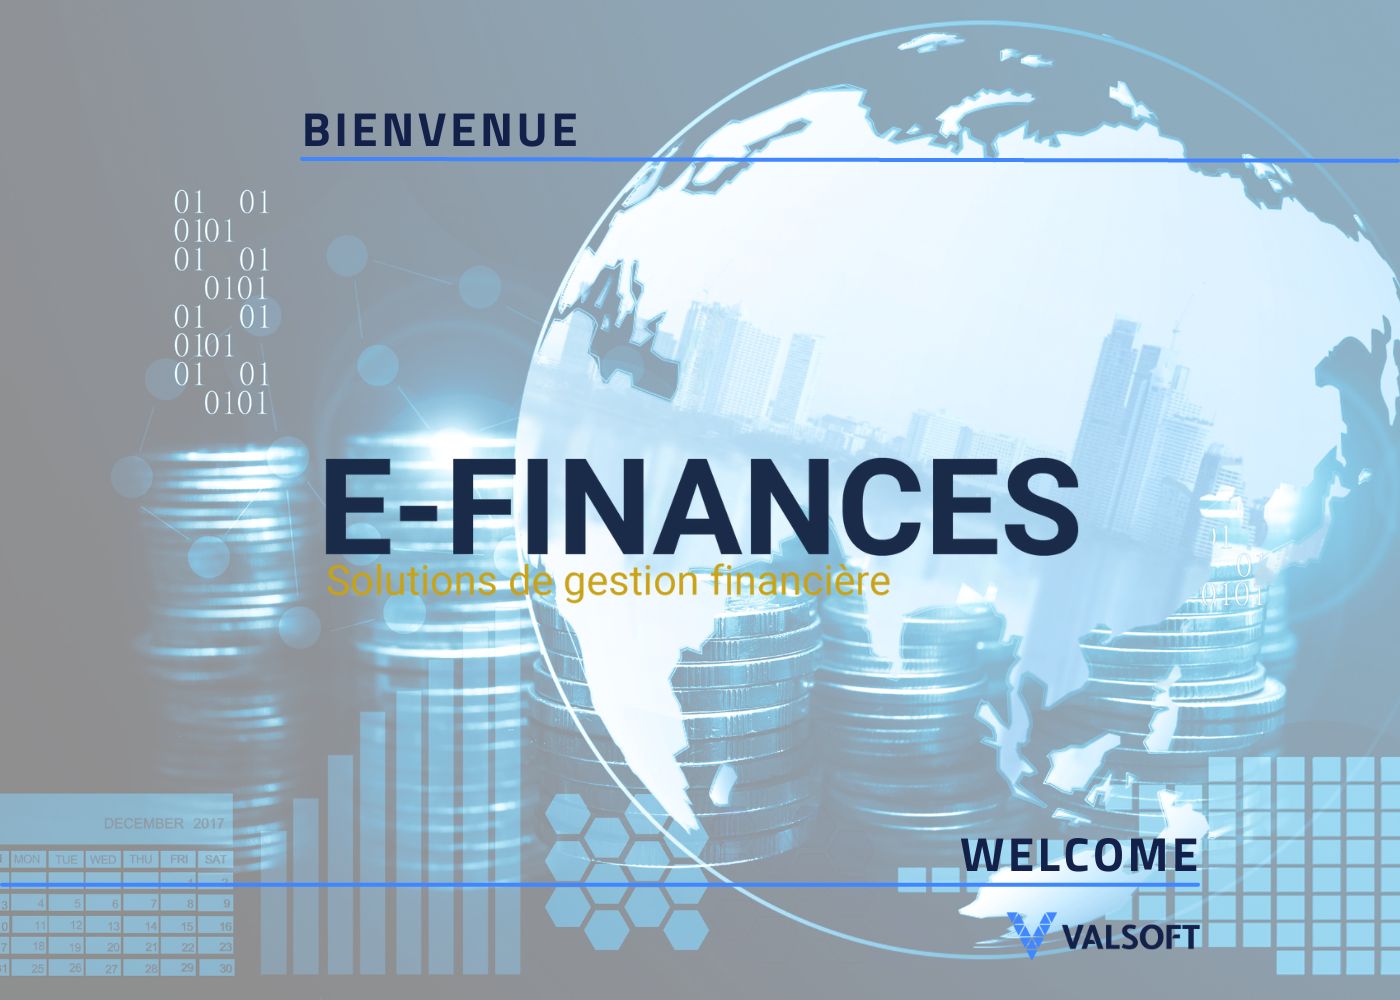 Valsoft Acquisition E-Finances